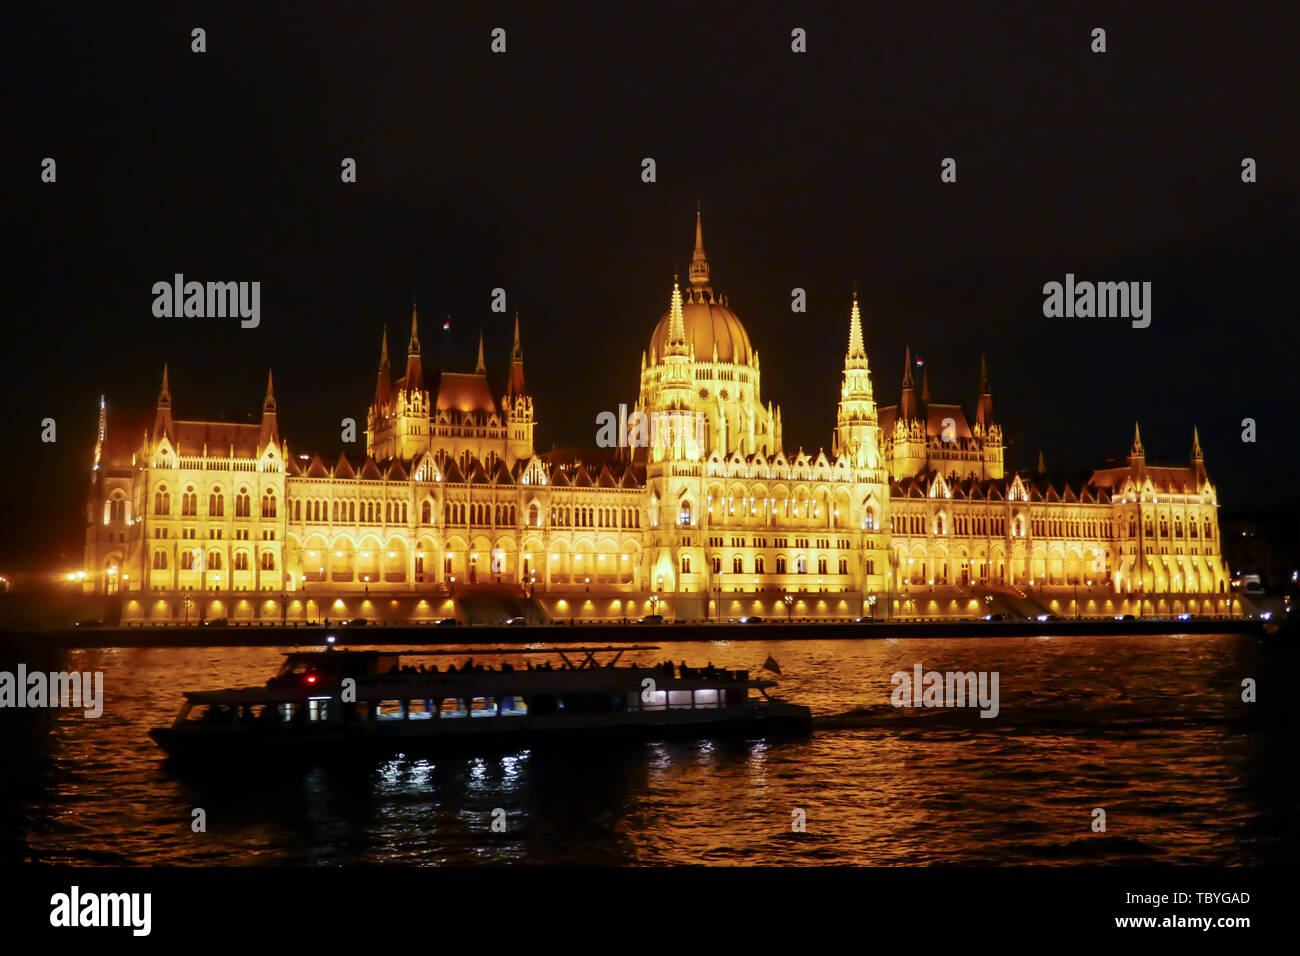 Silhouette von Touristen Sightseeing Boot auf der Donau vor der beleuchteten Parlamentsgebäude in Budapest, Ungarn in der Nacht. Stockfoto